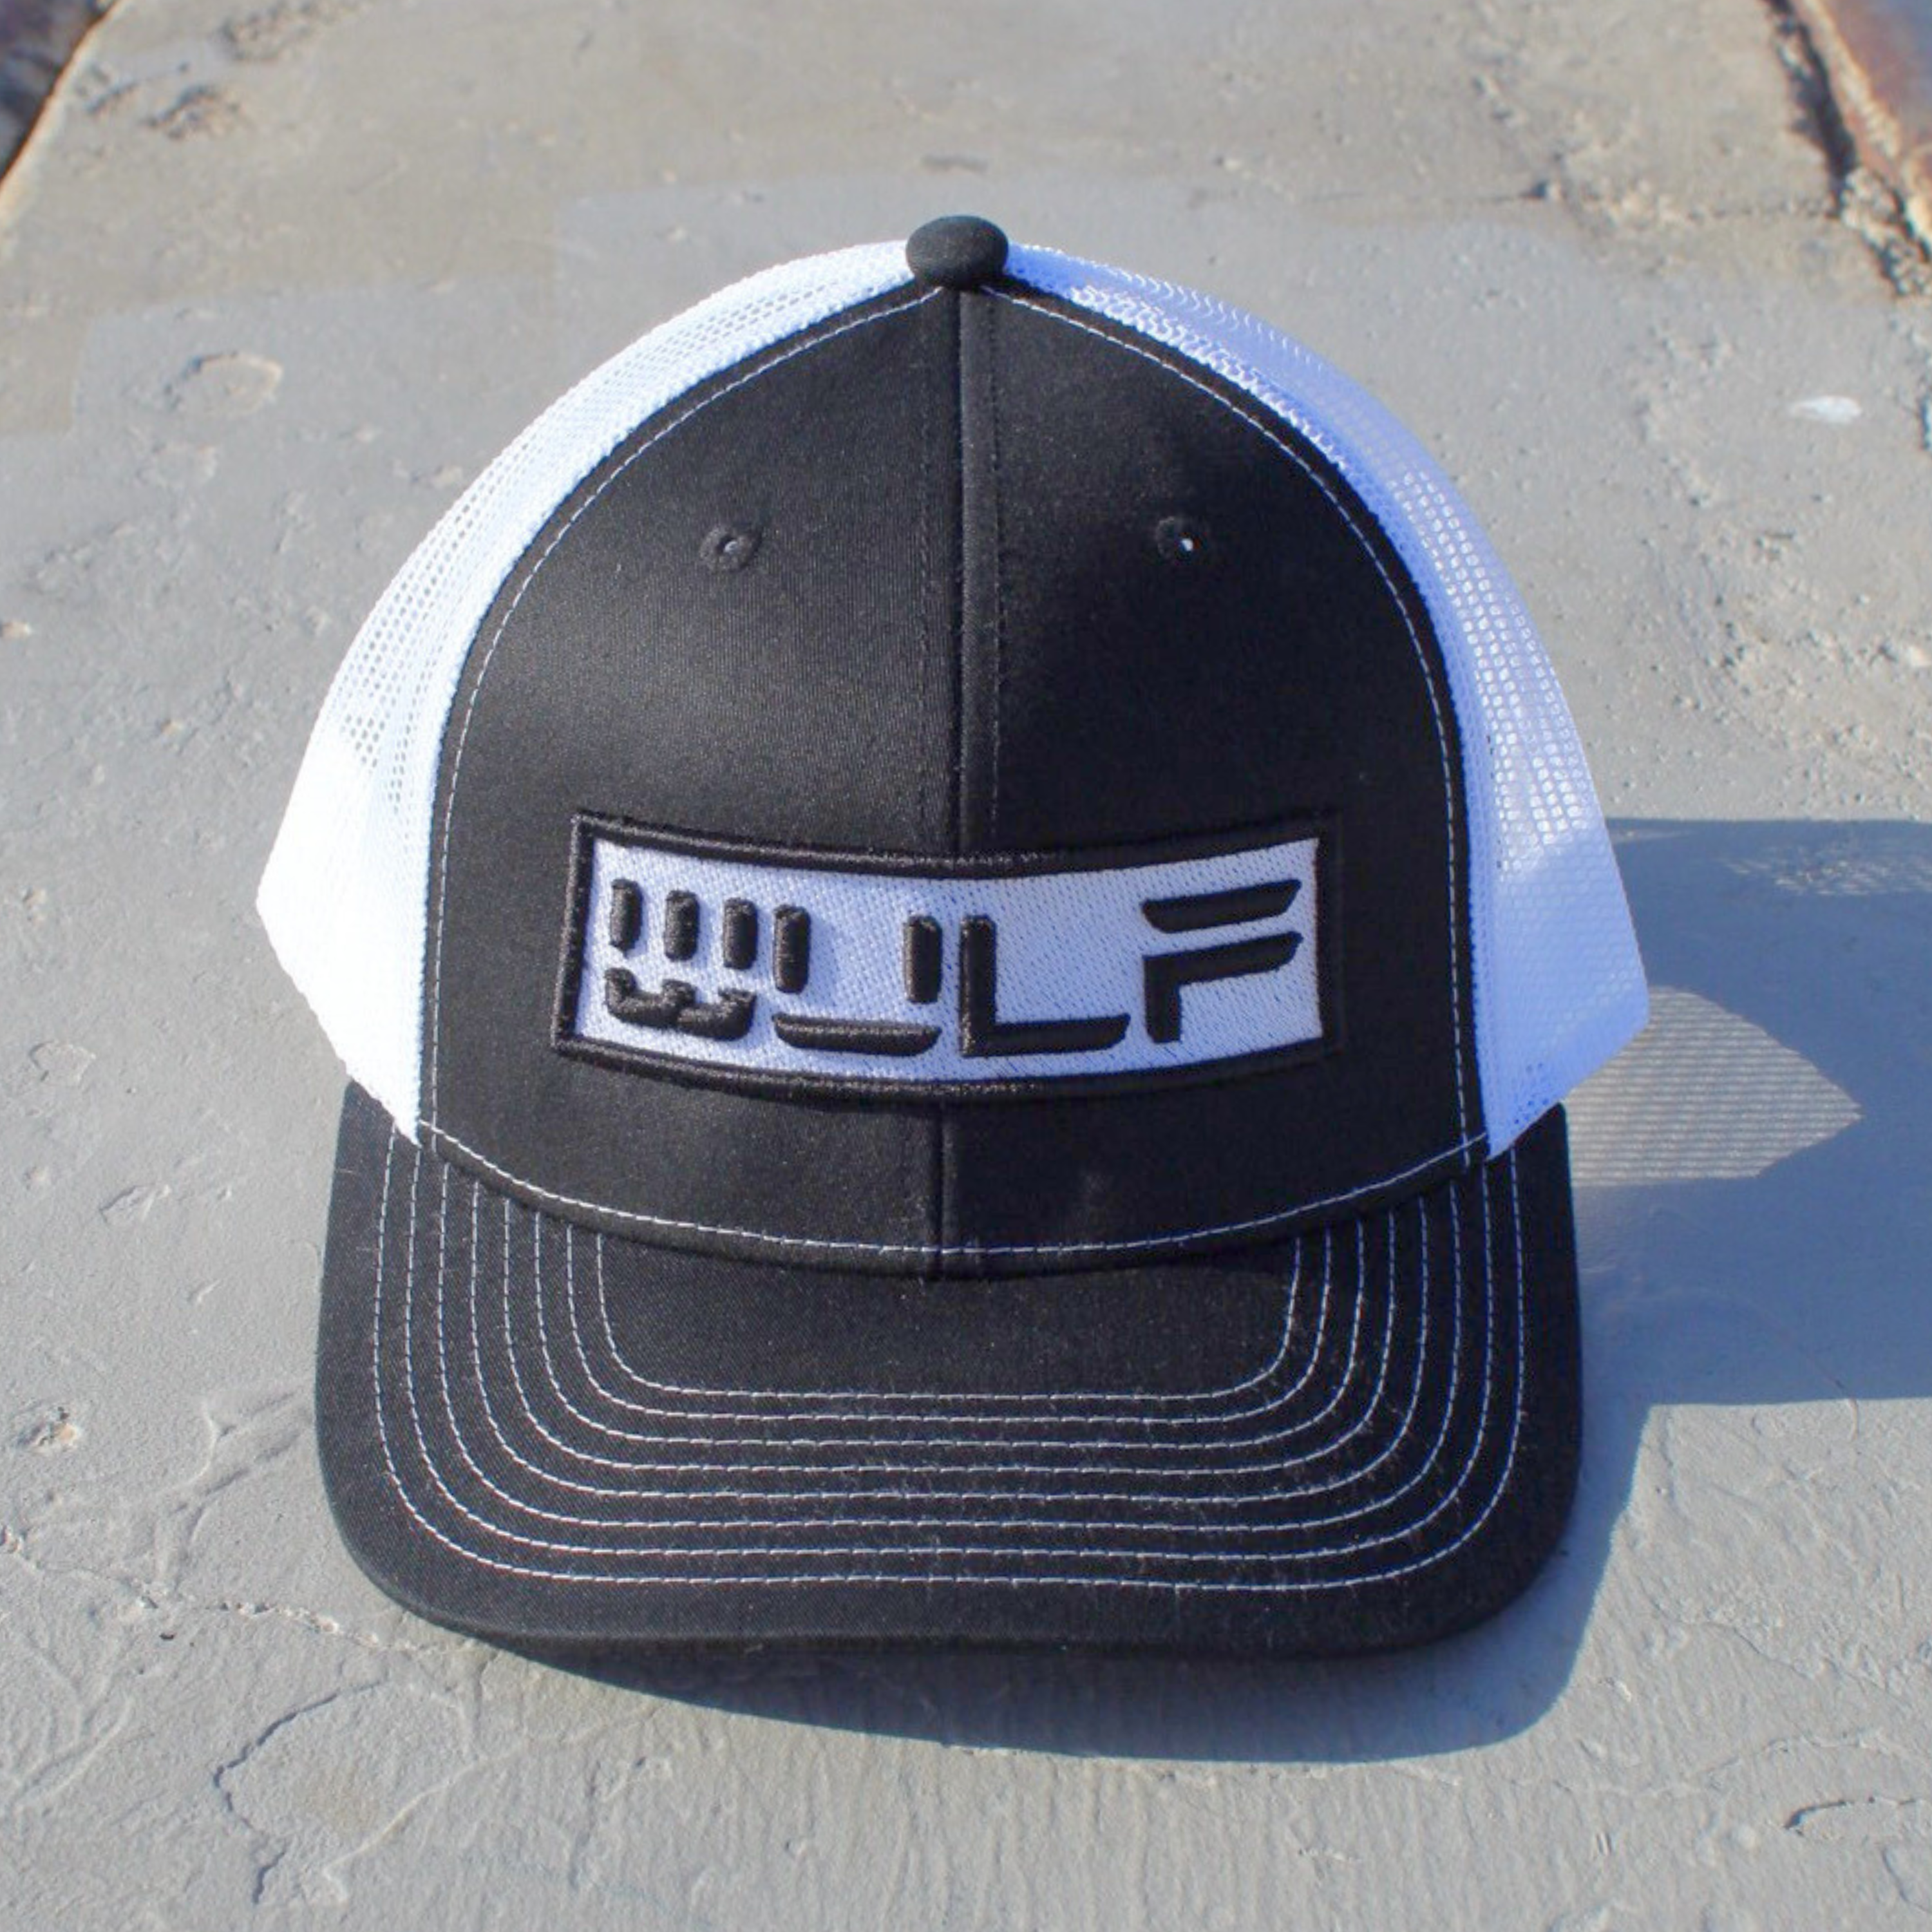 Black with White WULF Logo - Snapback